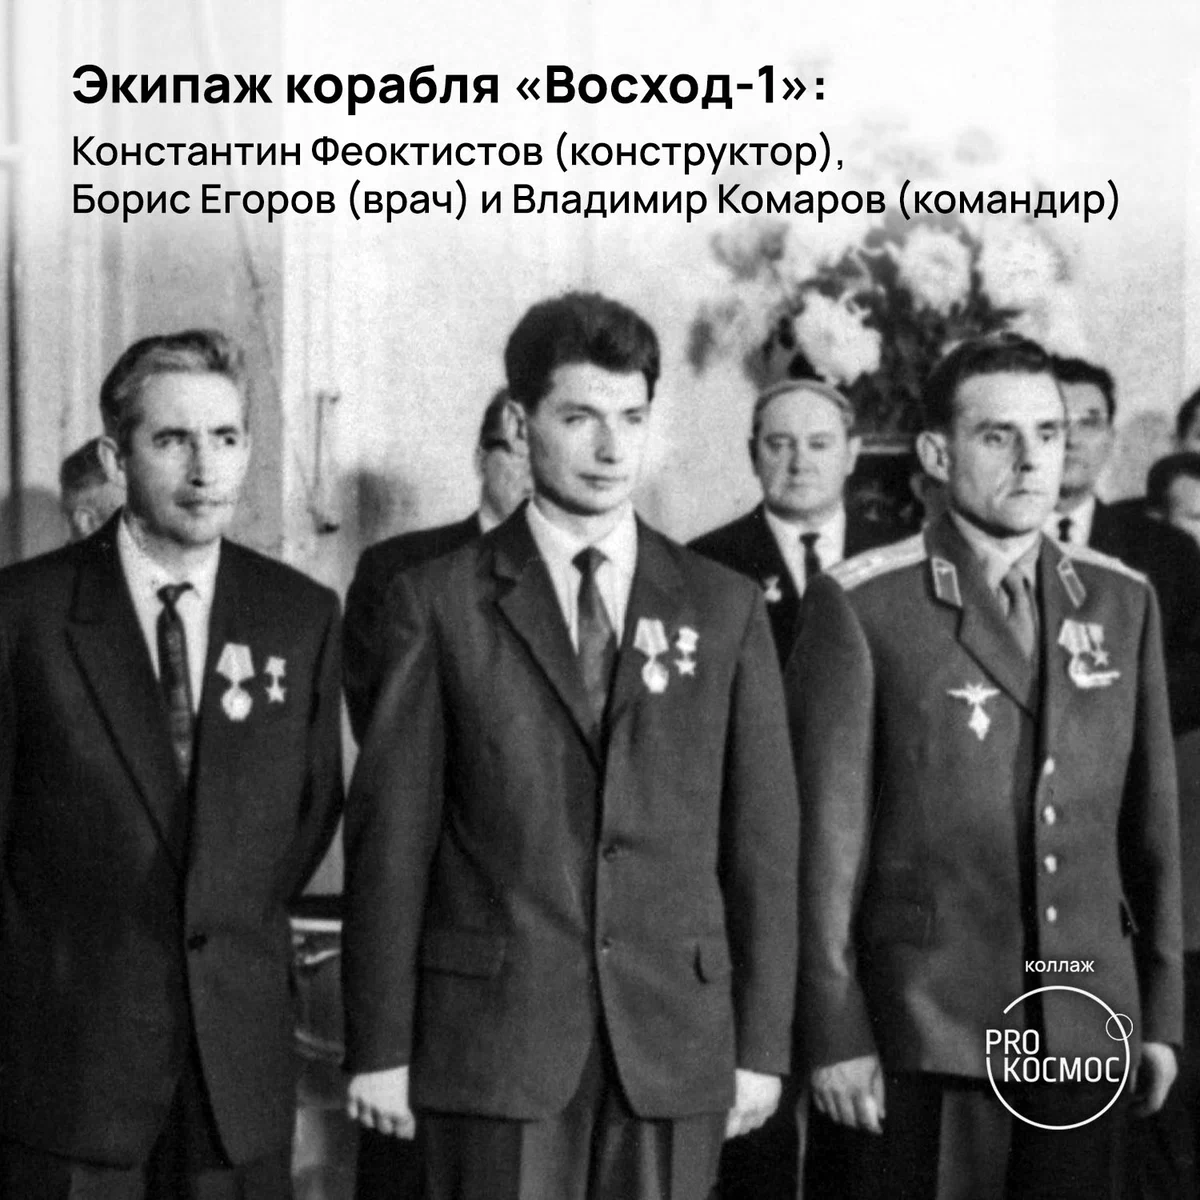 Первый врач-космонавт: 85 лет со дня рождения Бориса Егорова height=1200px width=1200px